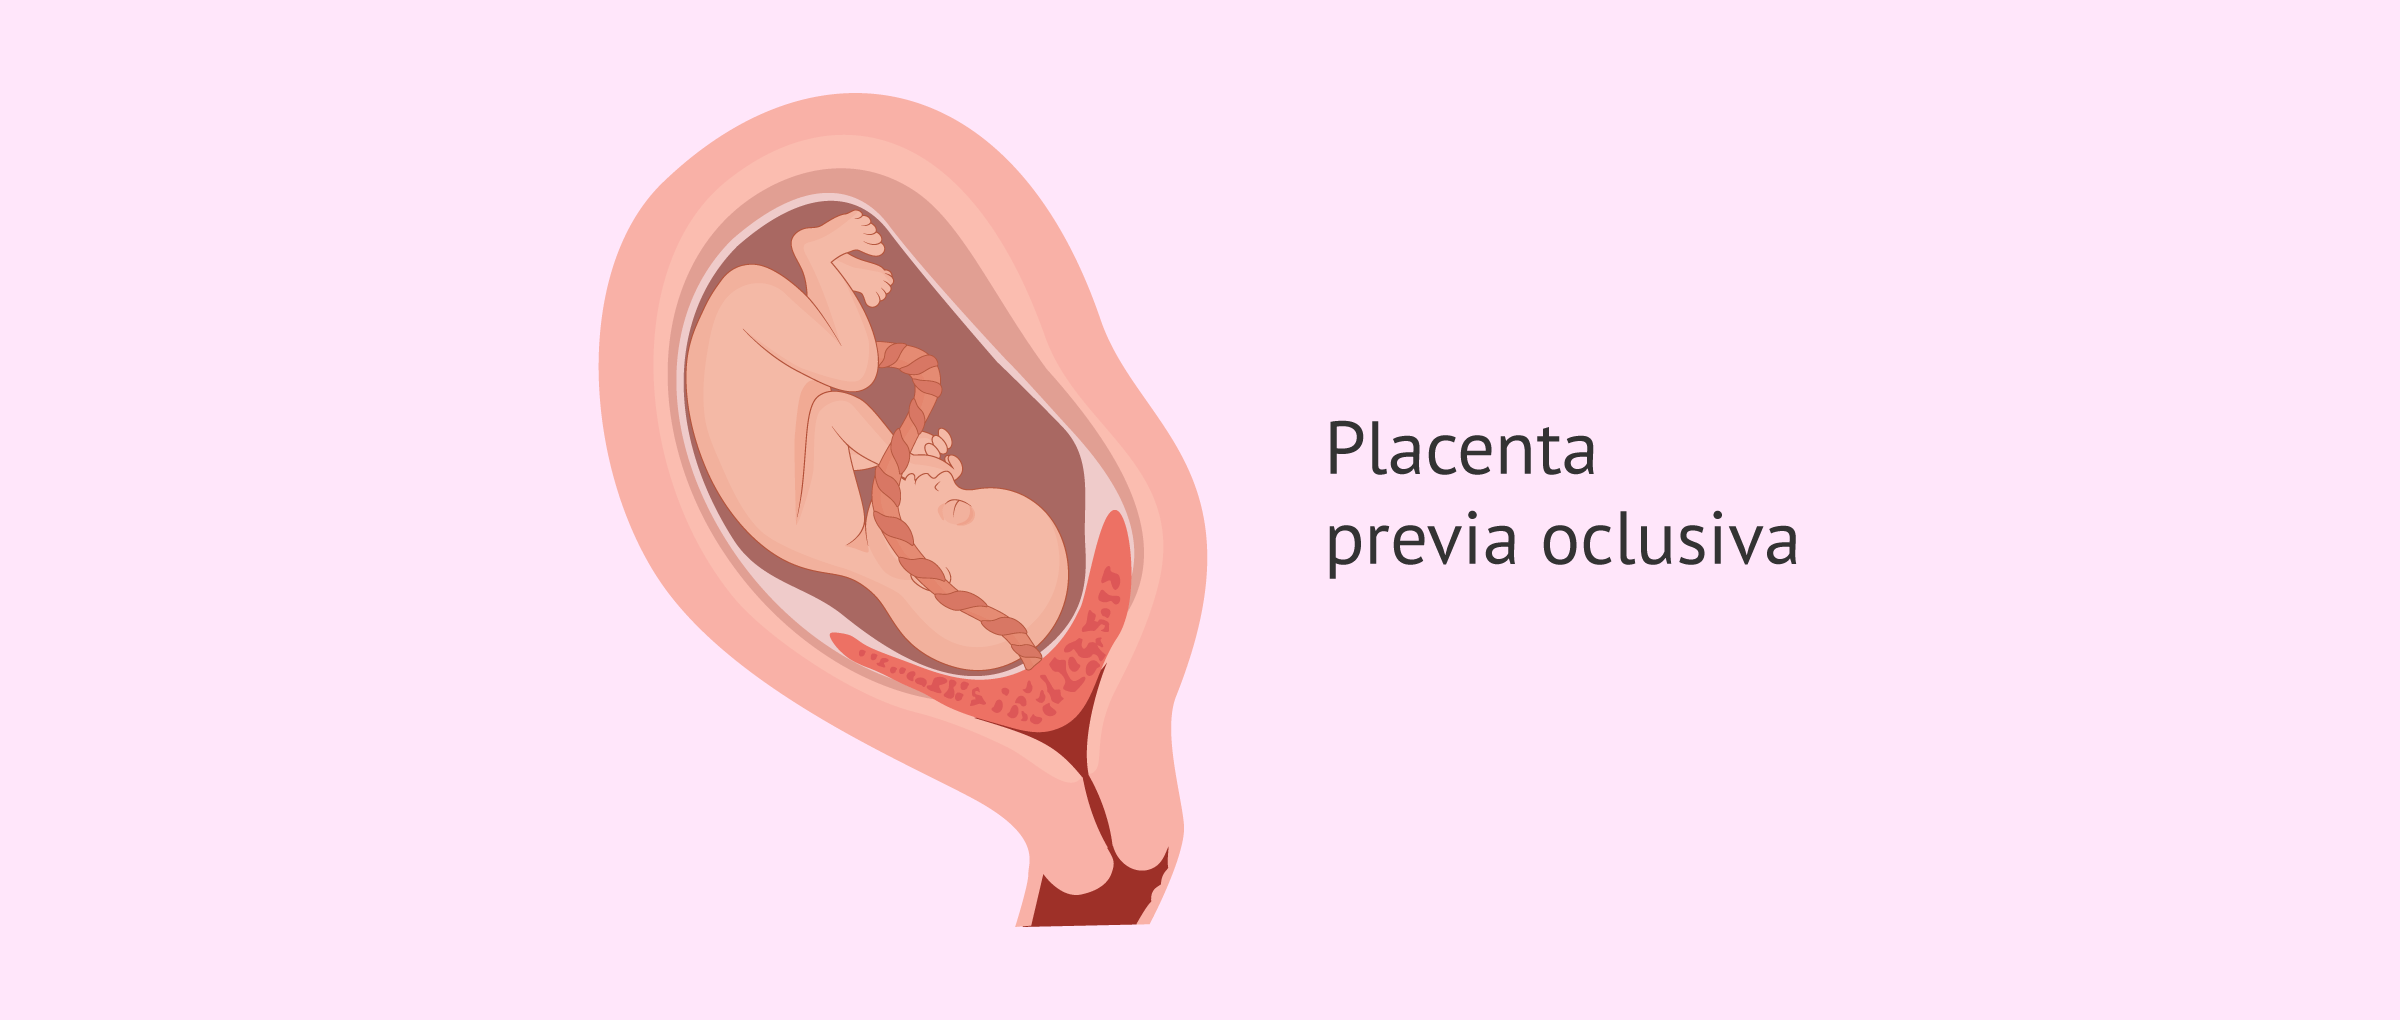 Placenta previa oclusiva o total